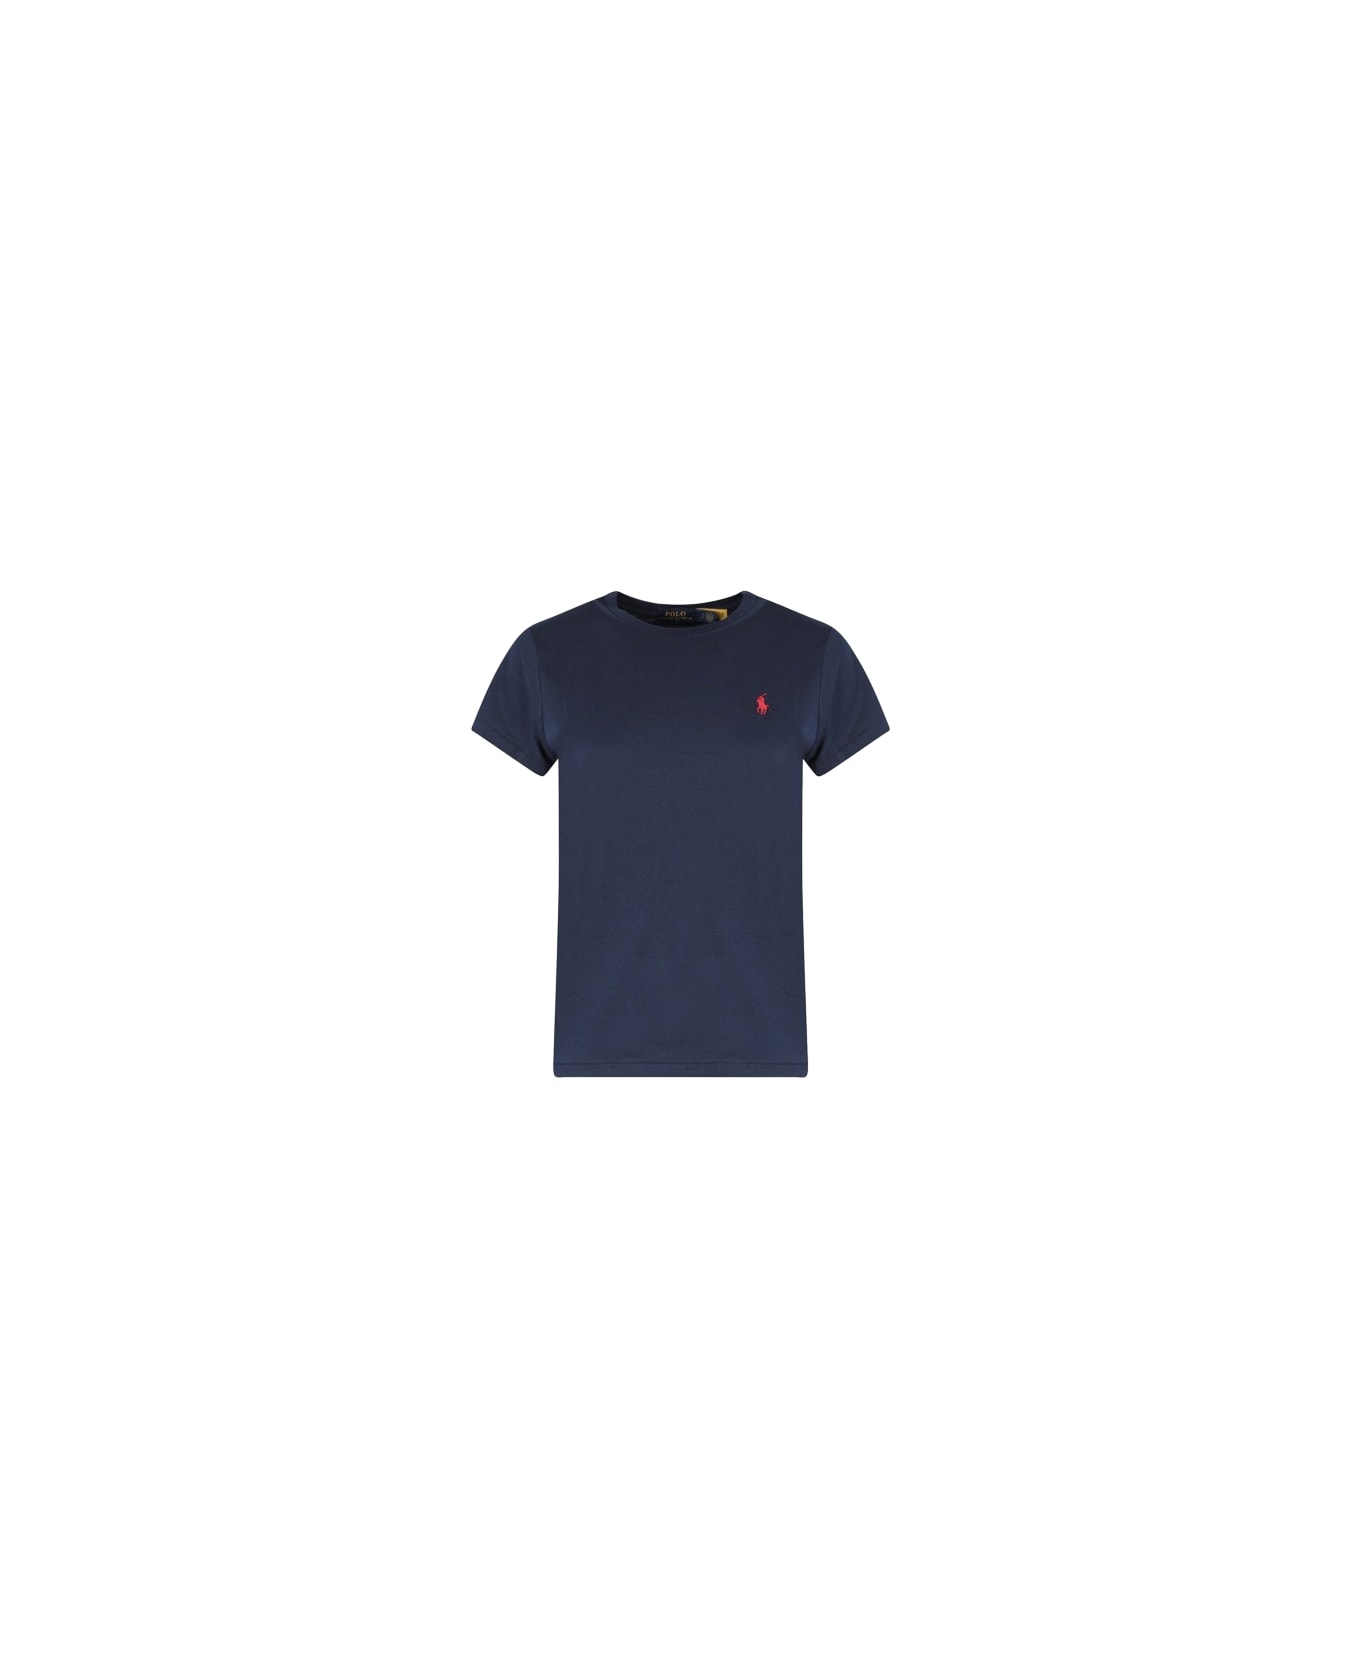 Polo Ralph Lauren T-shirt - Navy